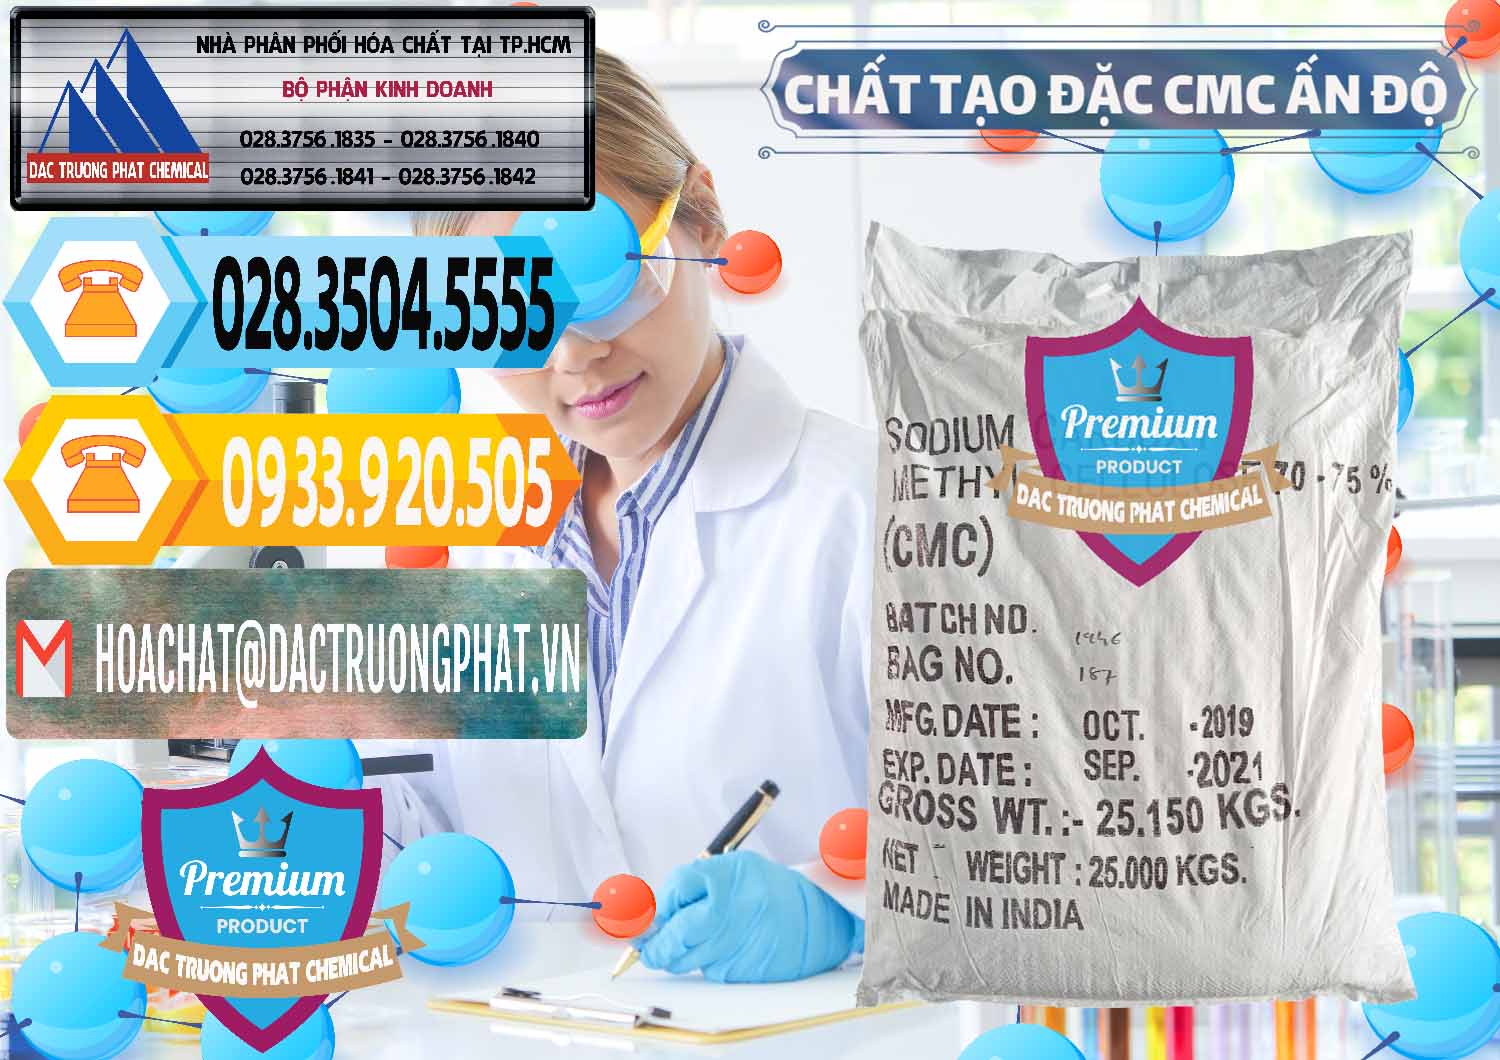 Công ty chuyên bán _ phân phối Chất Tạo Đặc CMC - Carboxyl Methyl Cellulose Ấn Độ India - 0044 - Cty chuyên kinh doanh _ cung cấp hóa chất tại TP.HCM - hoachattayrua.net